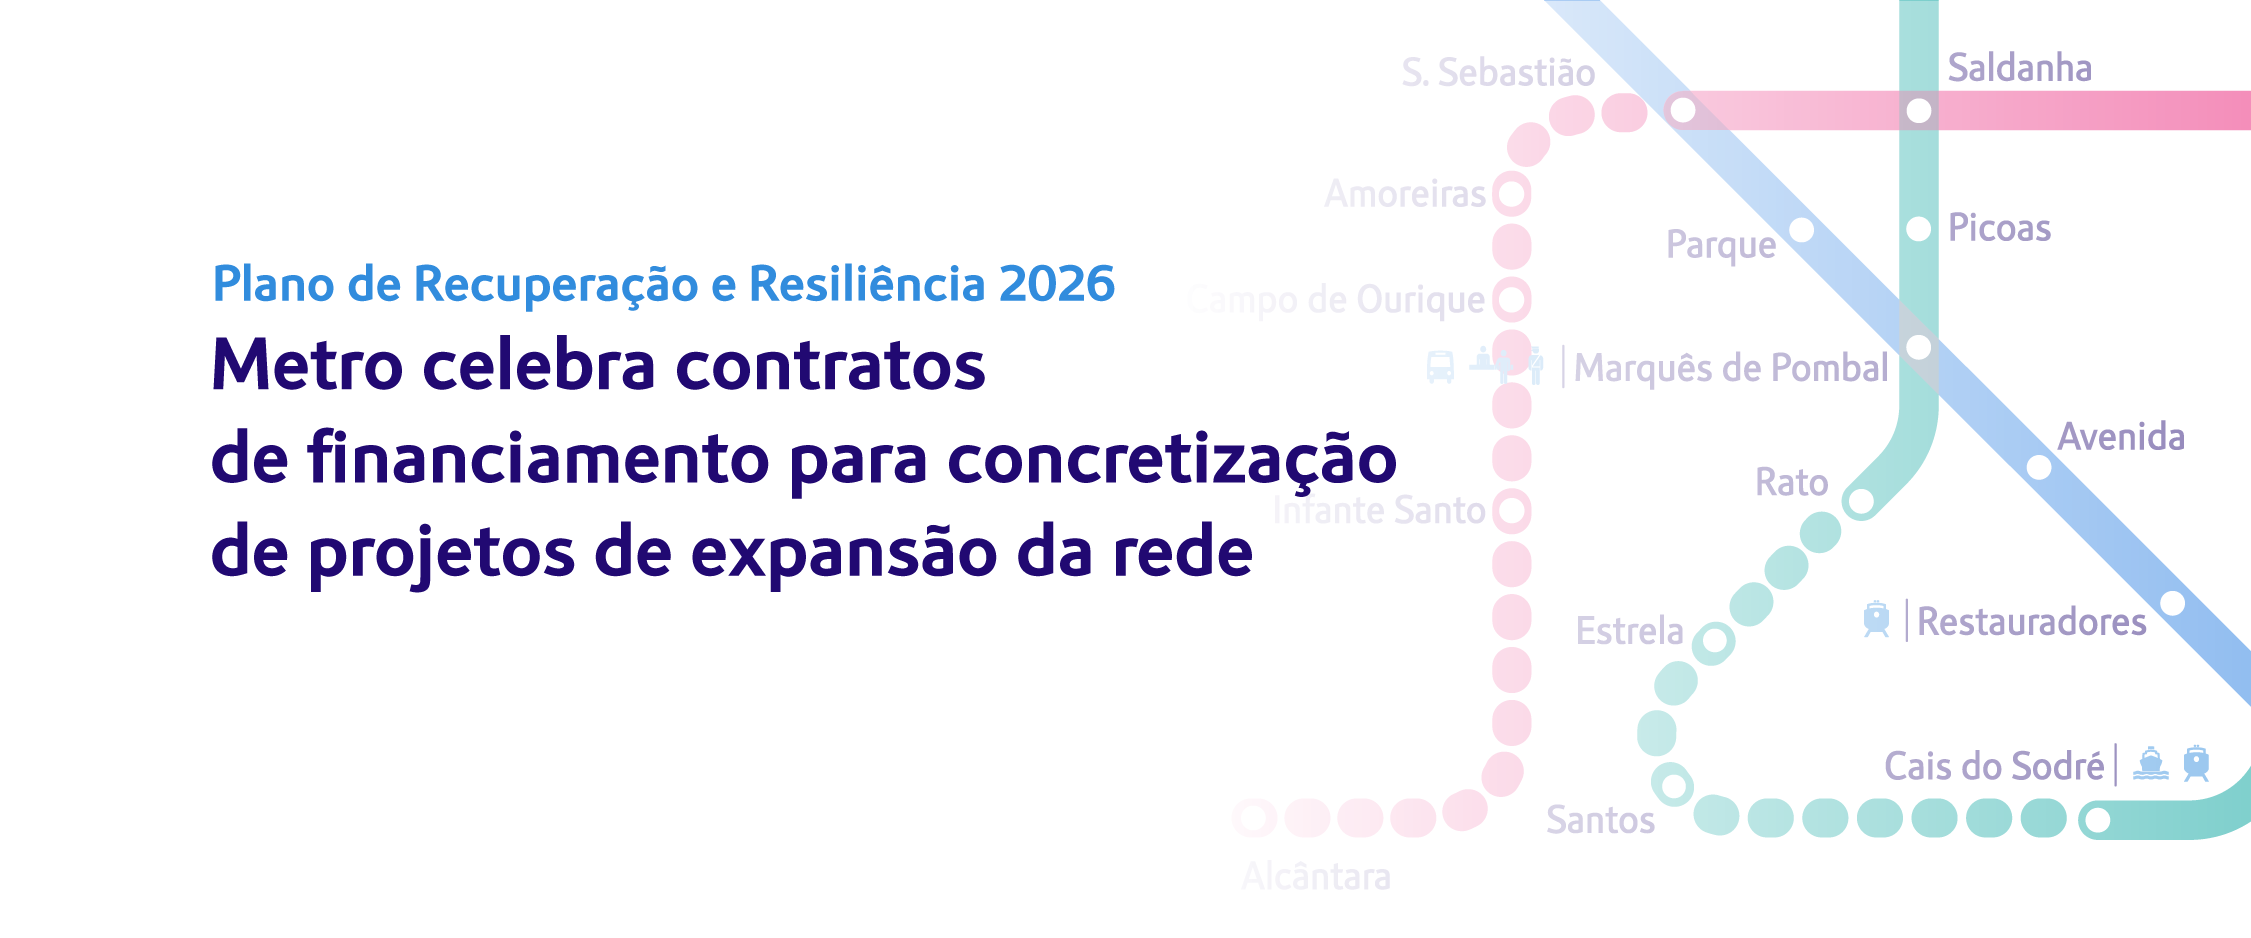 Metro celebra contratos de financiamento para concretização de projetos de expansão da rede